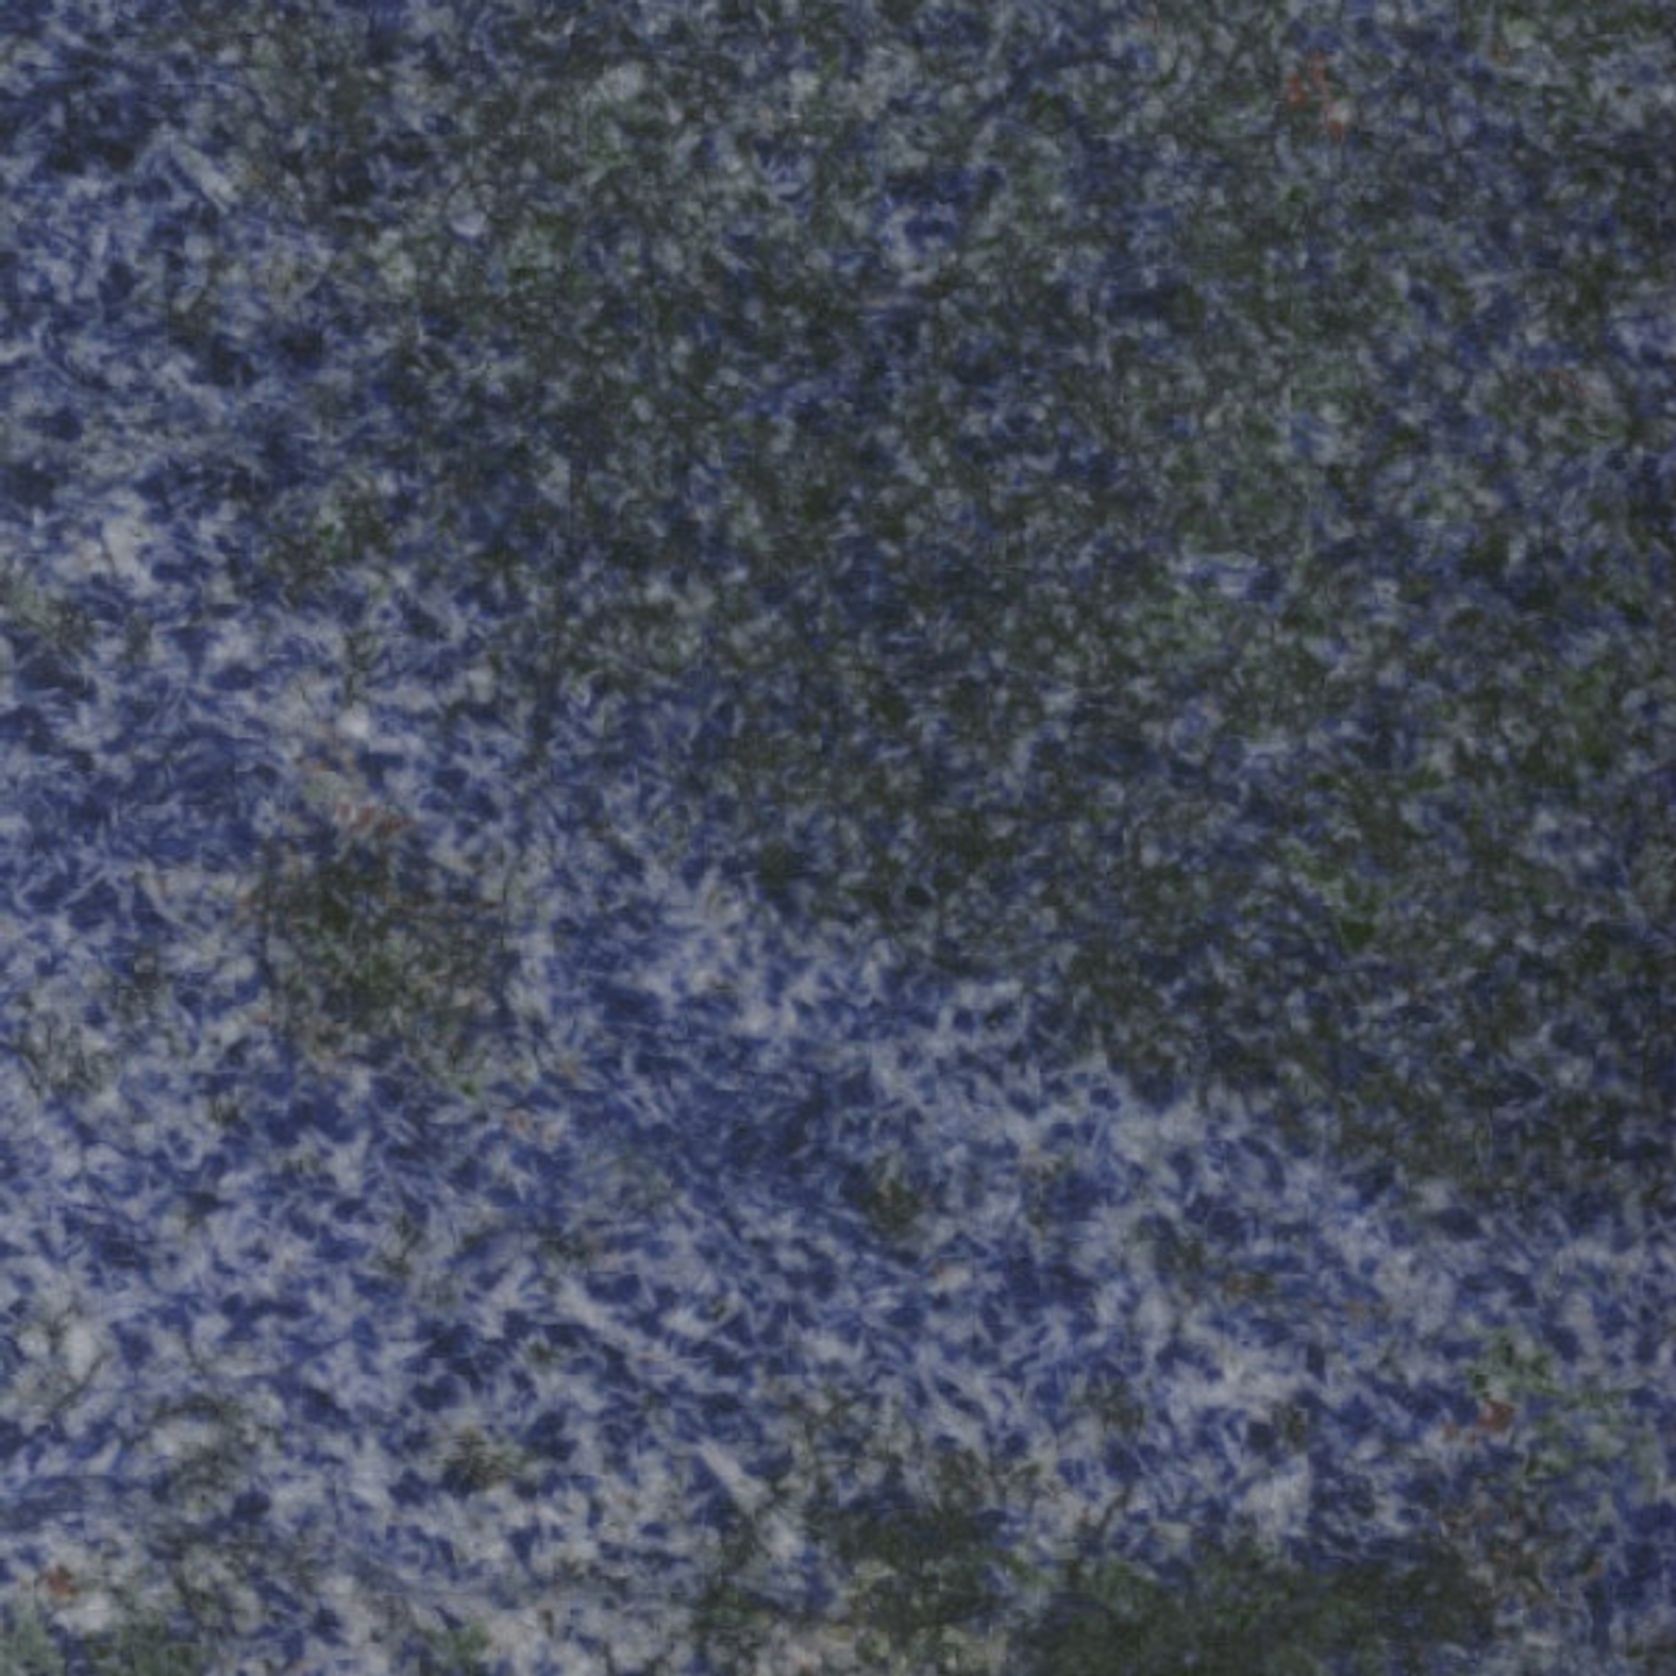 Azul Bahia Granite gallery detail image